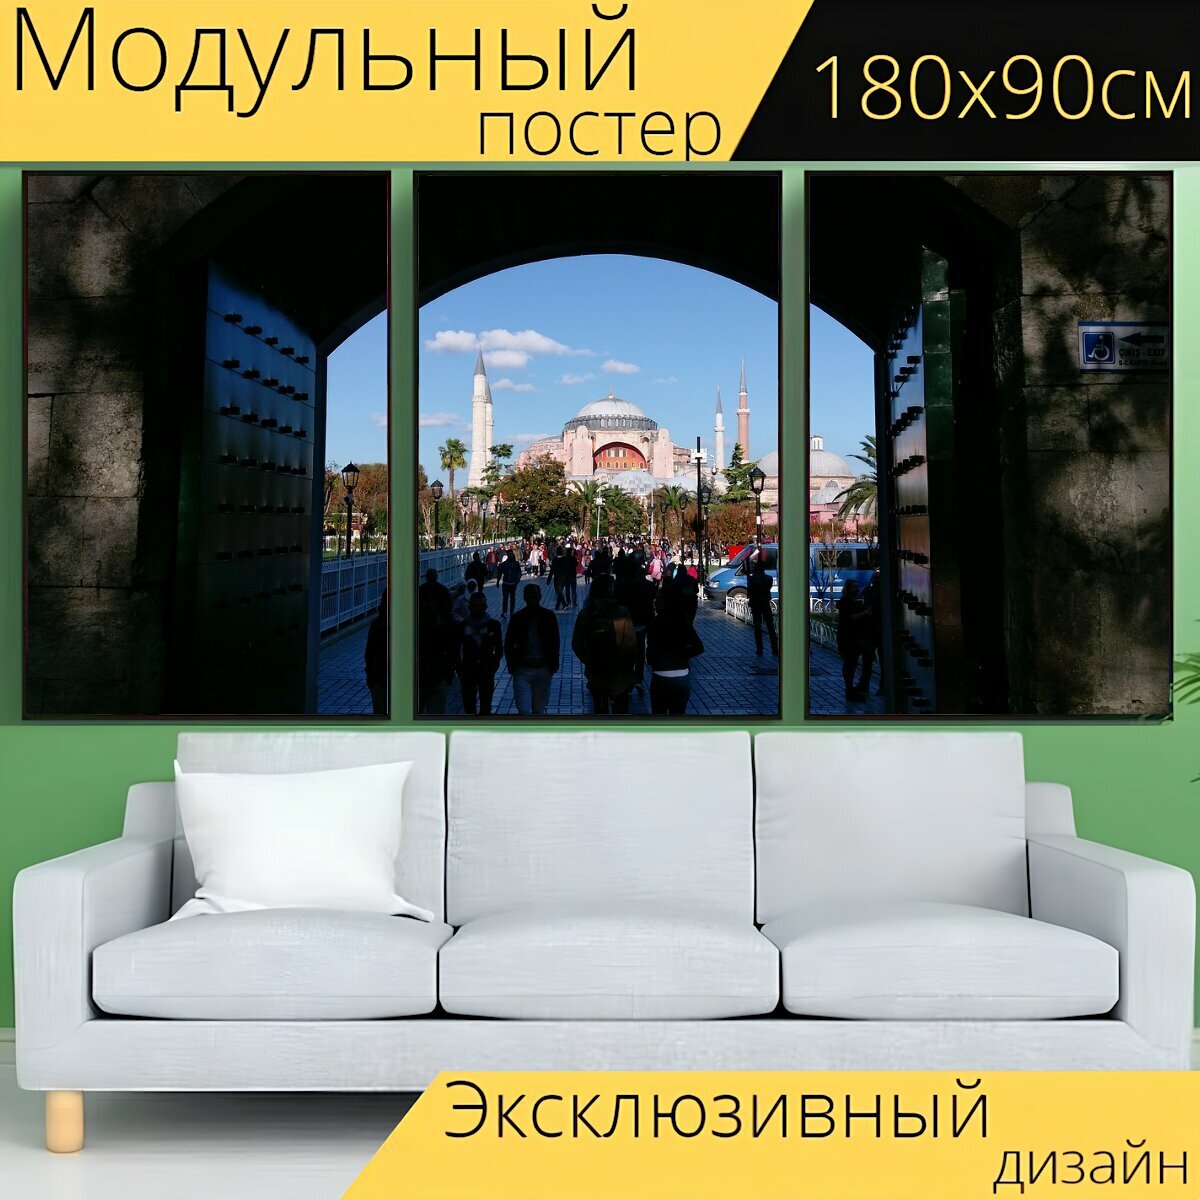 Модульный постер "Стамбул, собор святой софии, ислам" 180 x 90 см. для интерьера